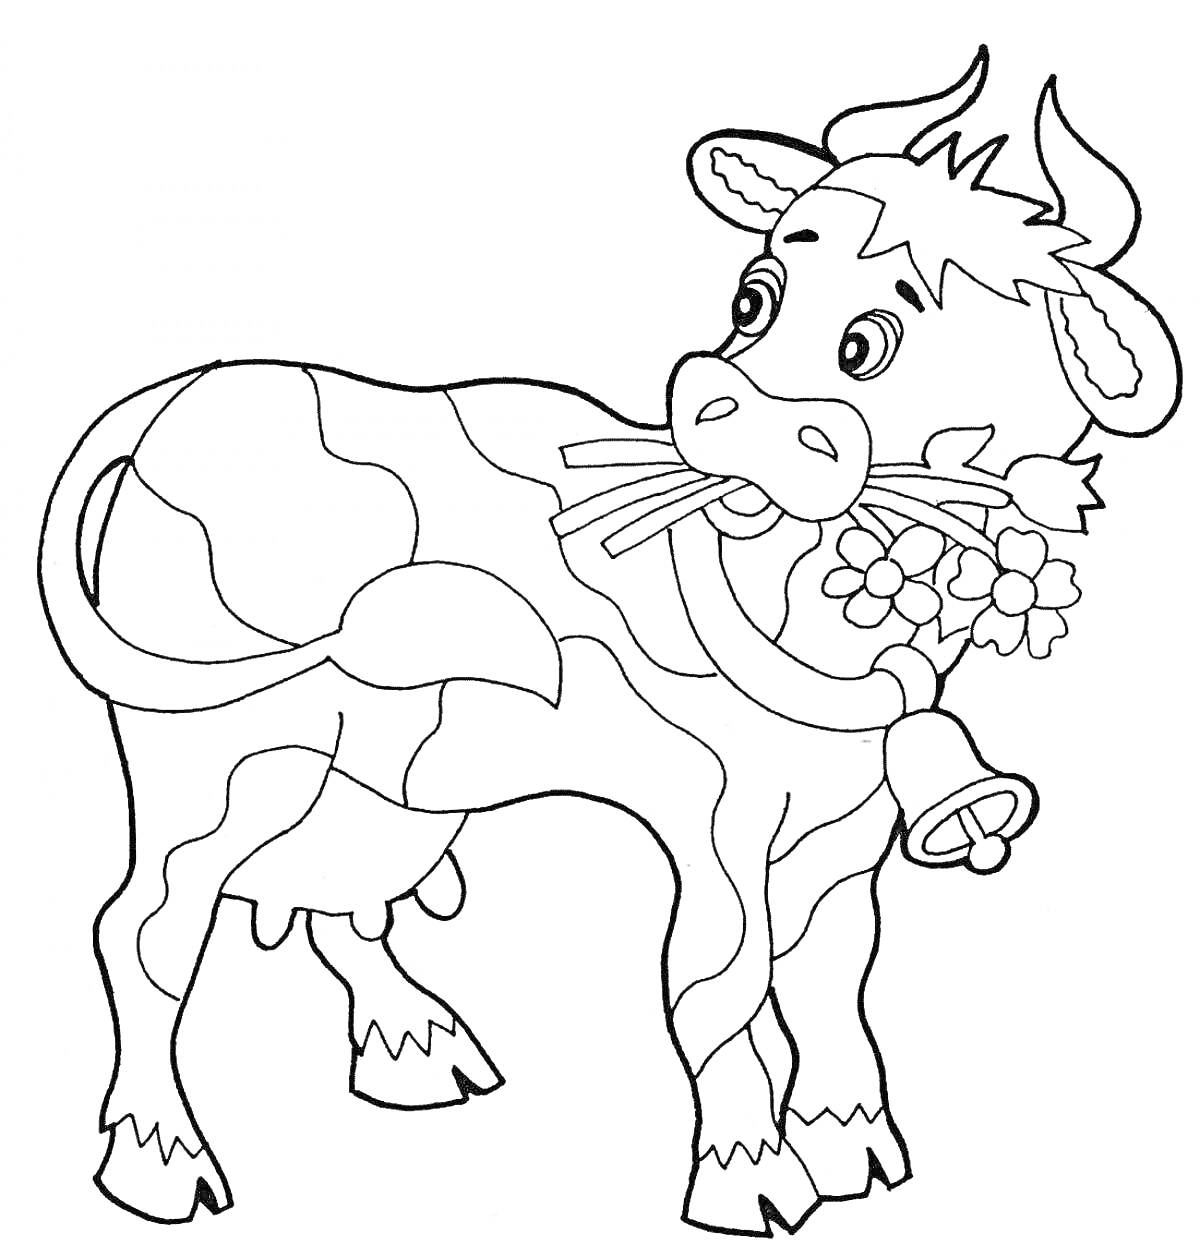 Корова с колокольчиком и цветком на шее, стоящая и смотрящая назад.